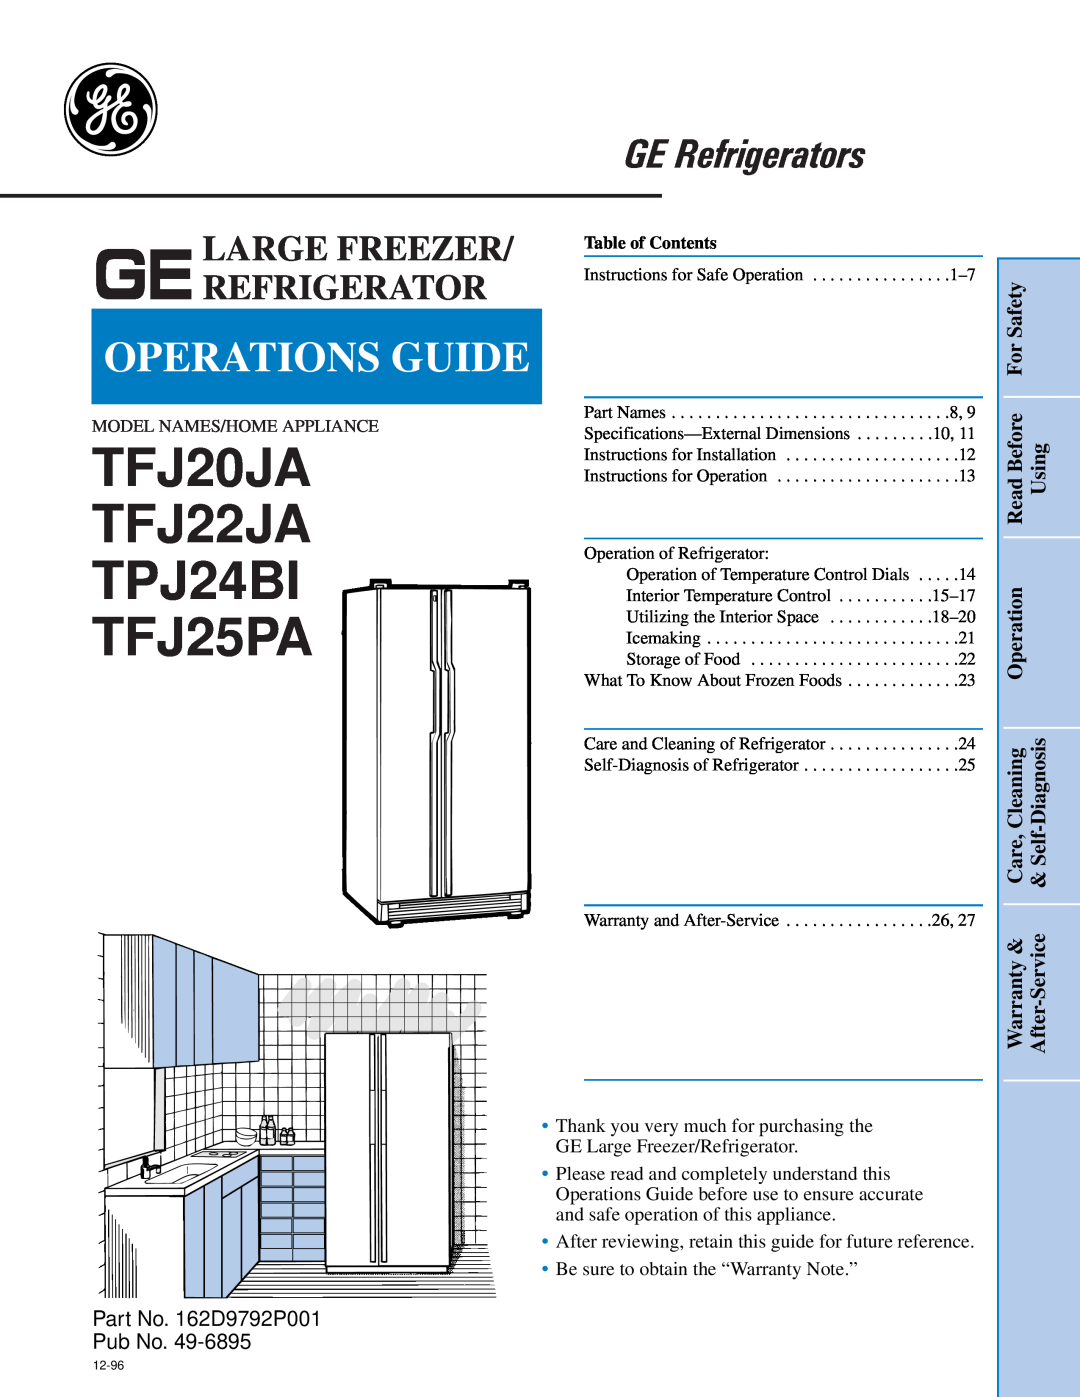 GE specifications Gelarge Freezer Refrigerator, TFJ20JA TFJ22JA TPJ24BI TFJ25PA, GE Refrigerators, Operations Guide 